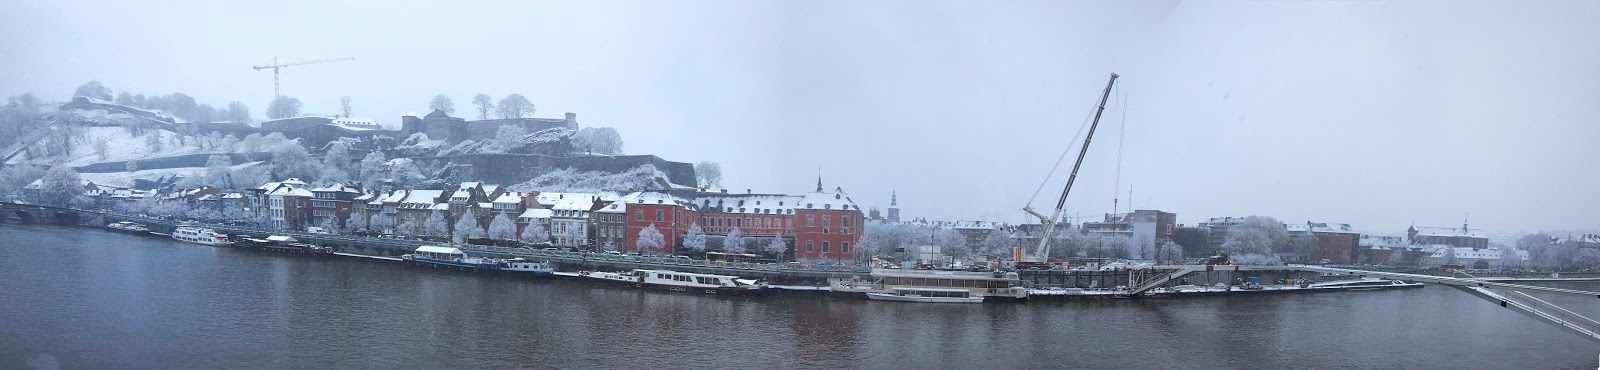 Namur sous la neige